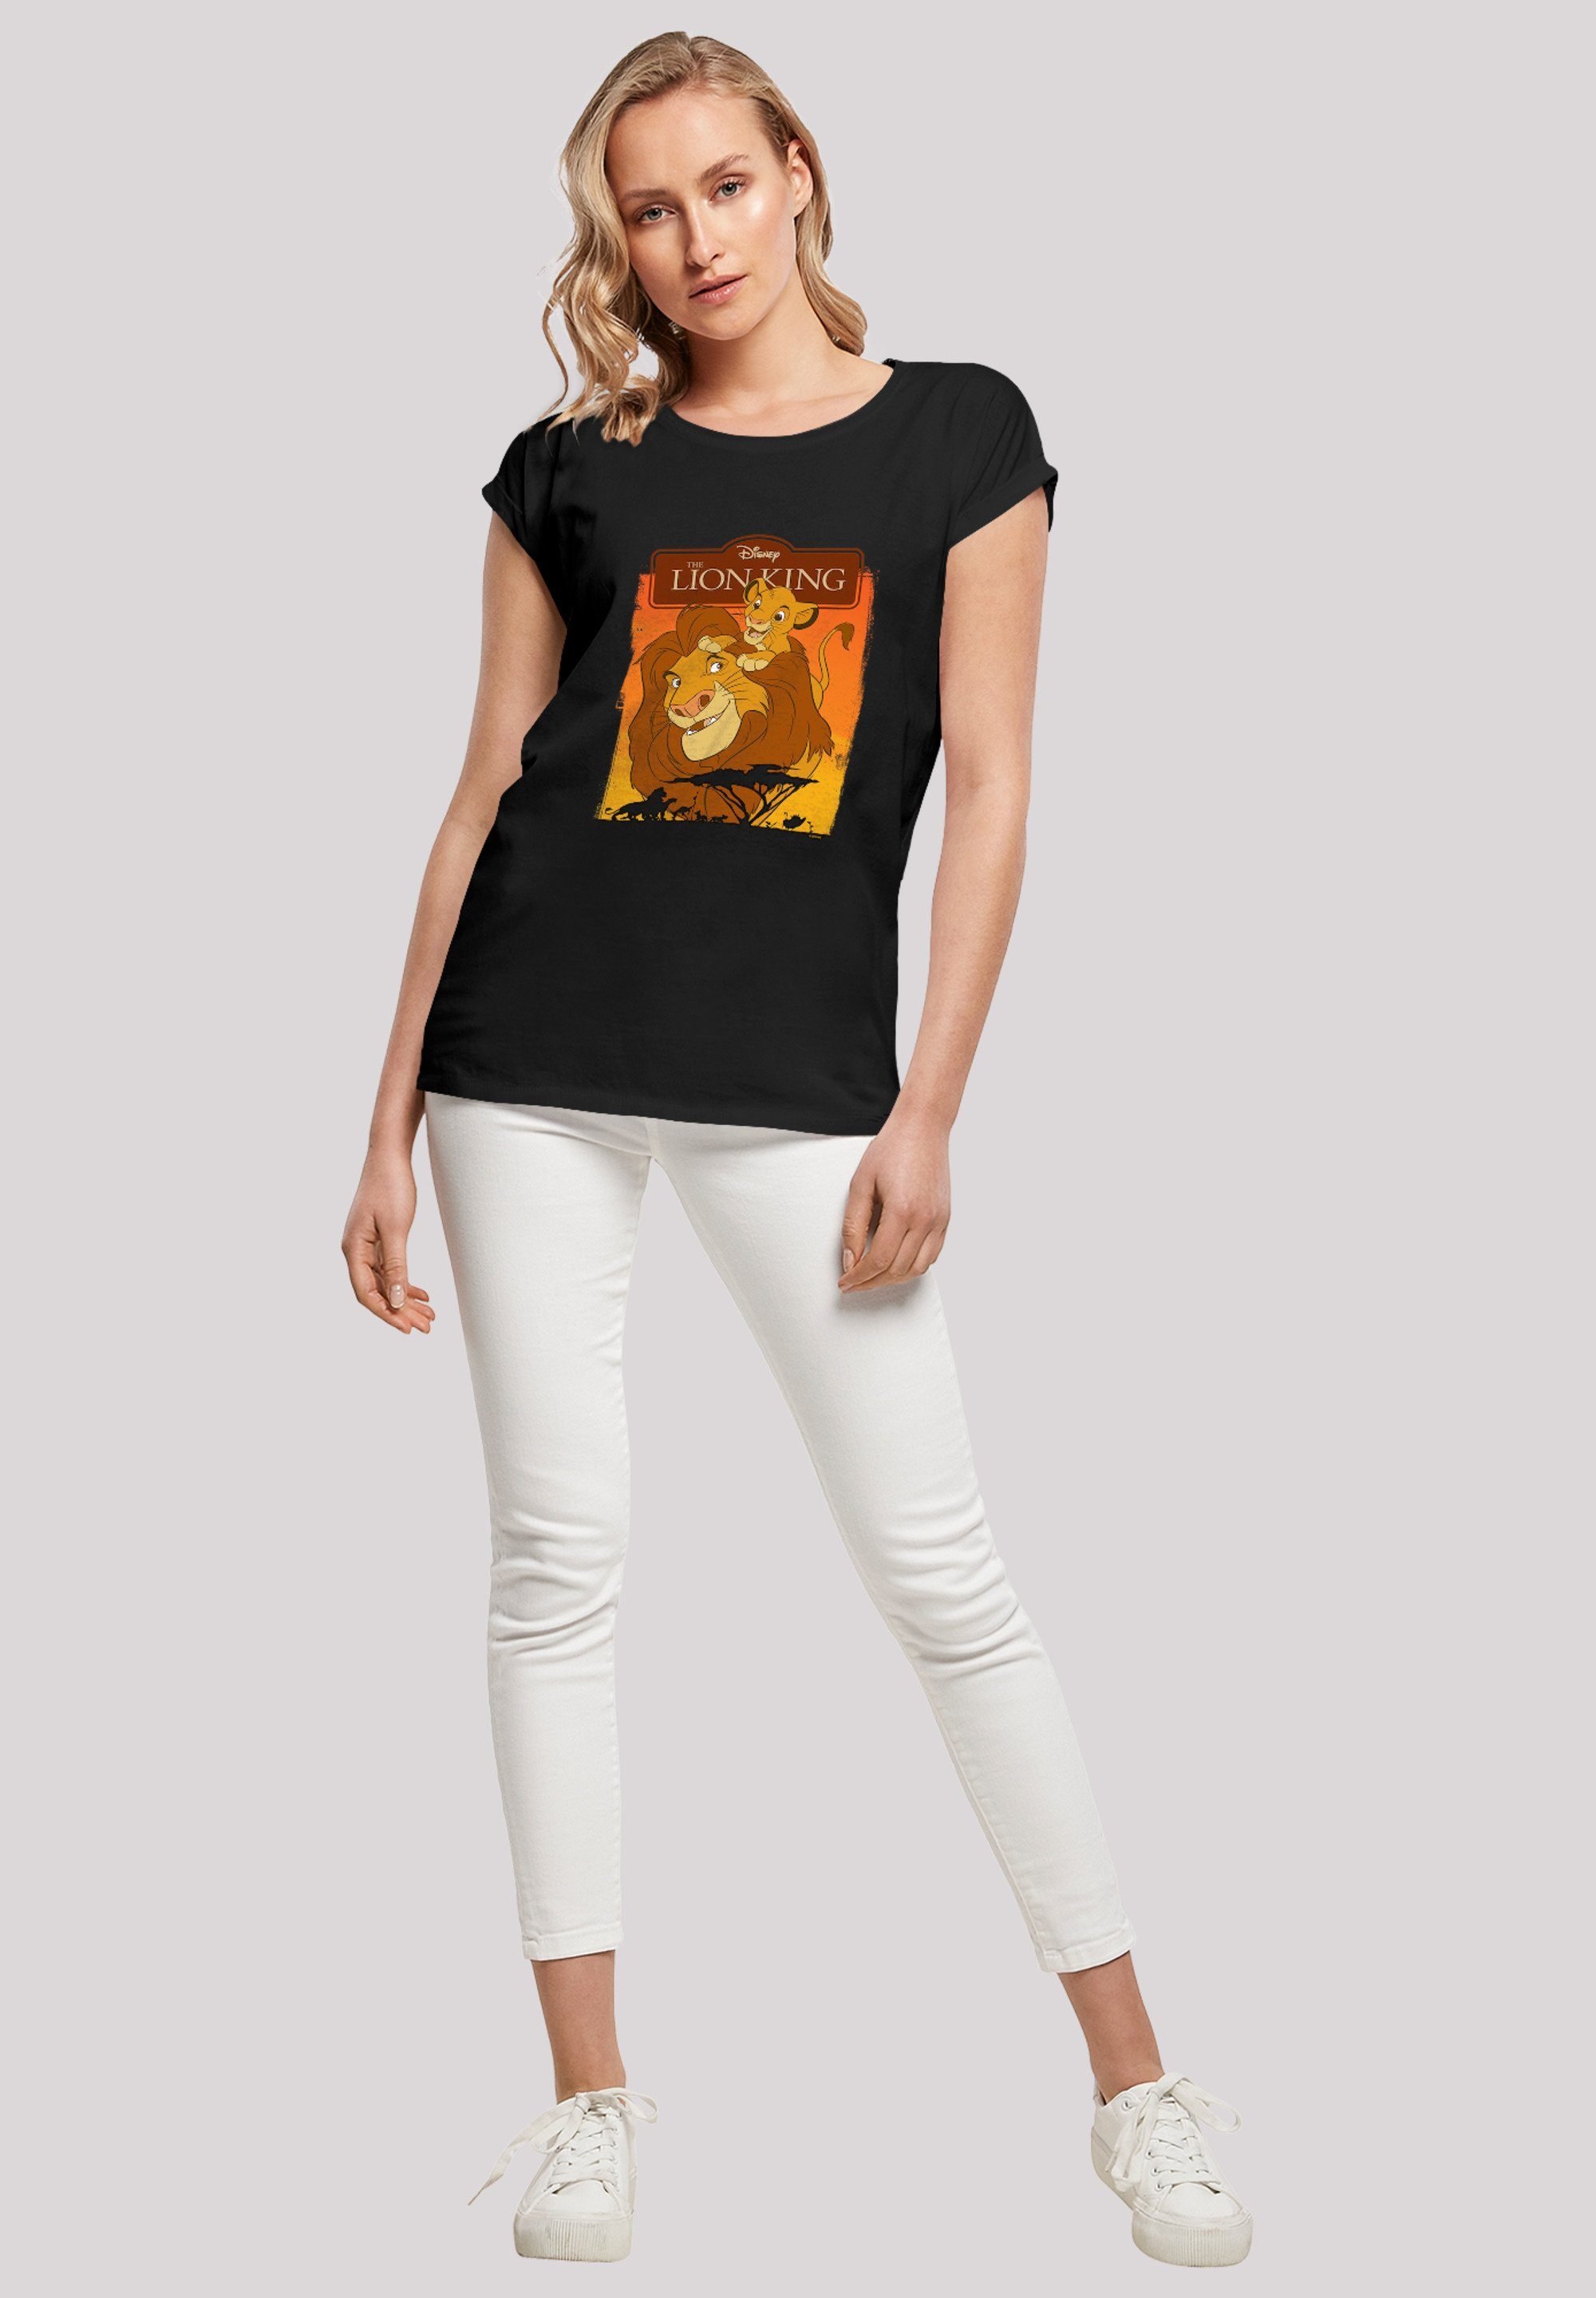 F4NT4STIC T-Shirt König der Löwen Print Simba Mufasa' und